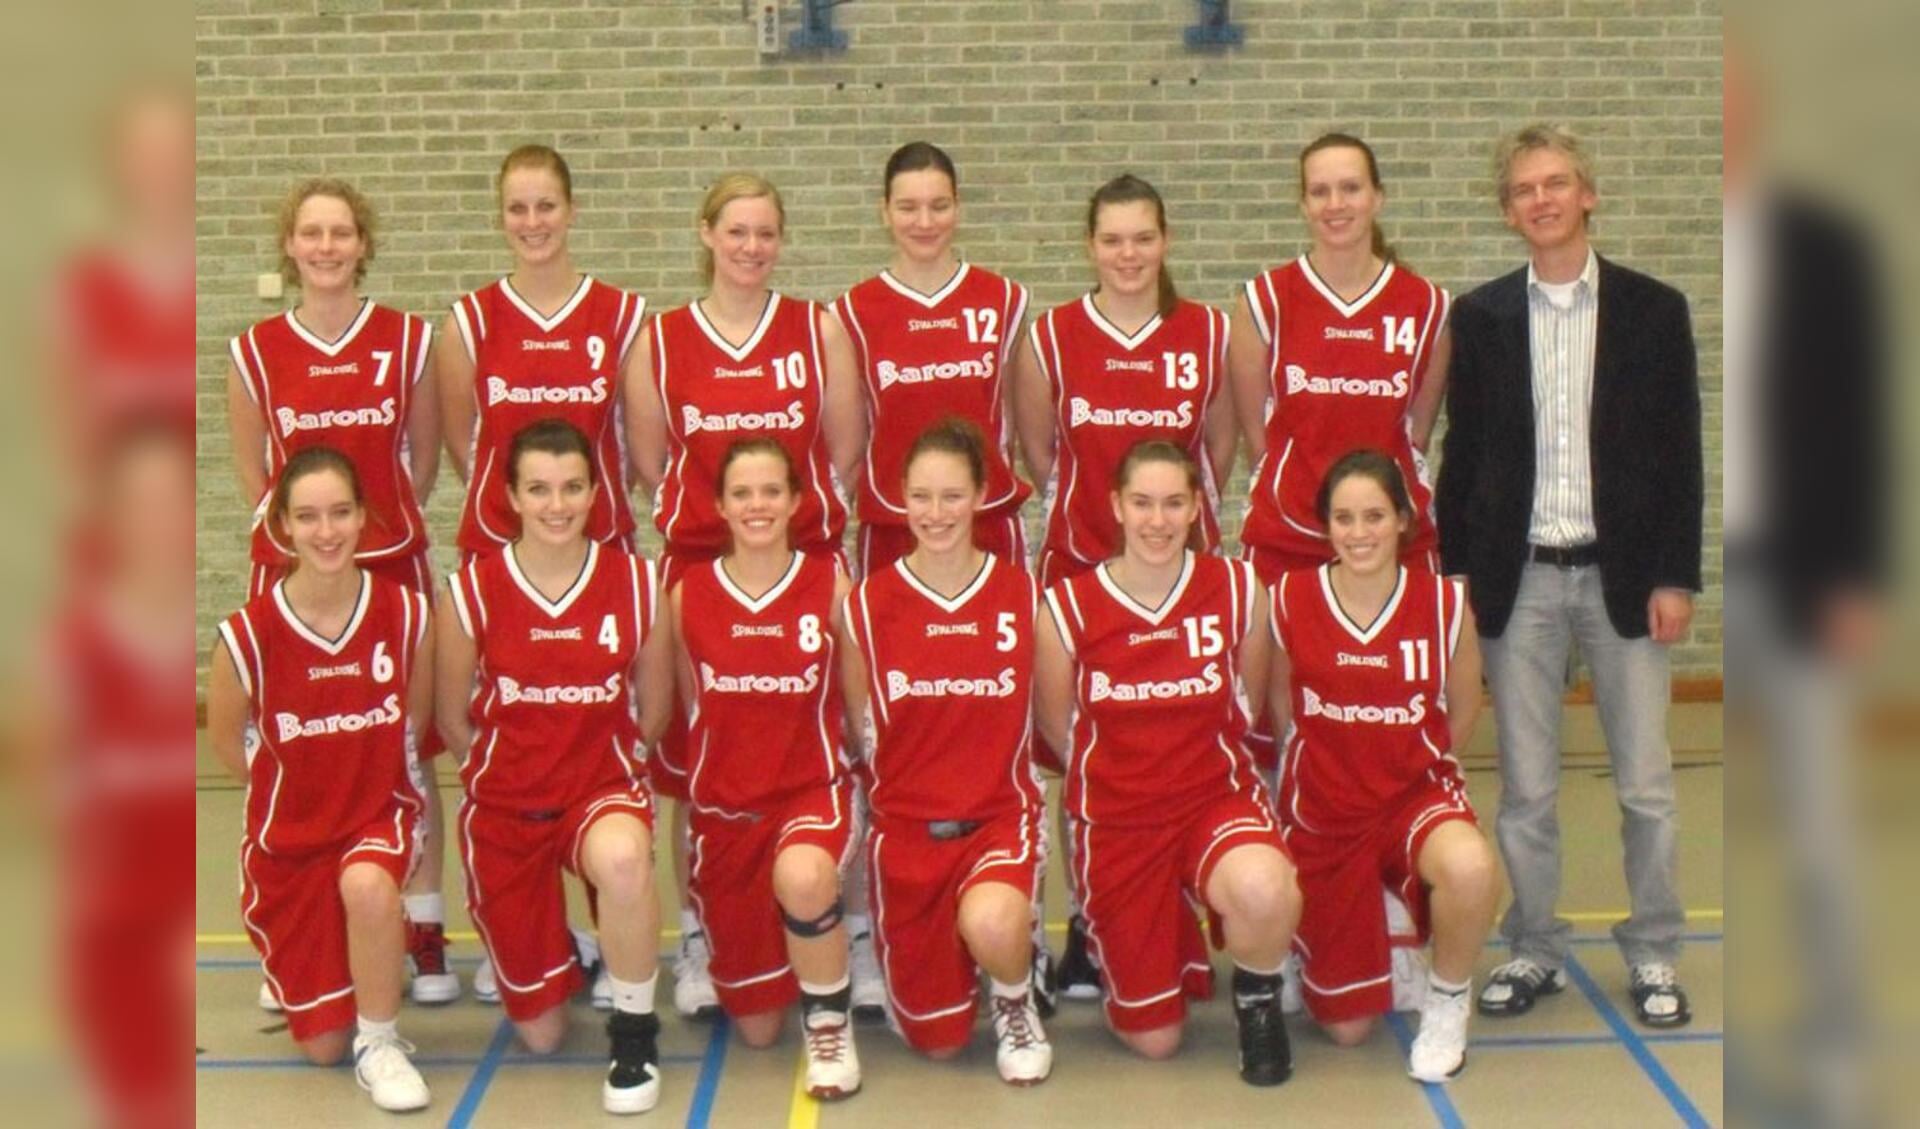 Het eerste damesteam van Barons, dat uitkomt in de hoofdklasse in seizoen 2009-2010. foto Barons